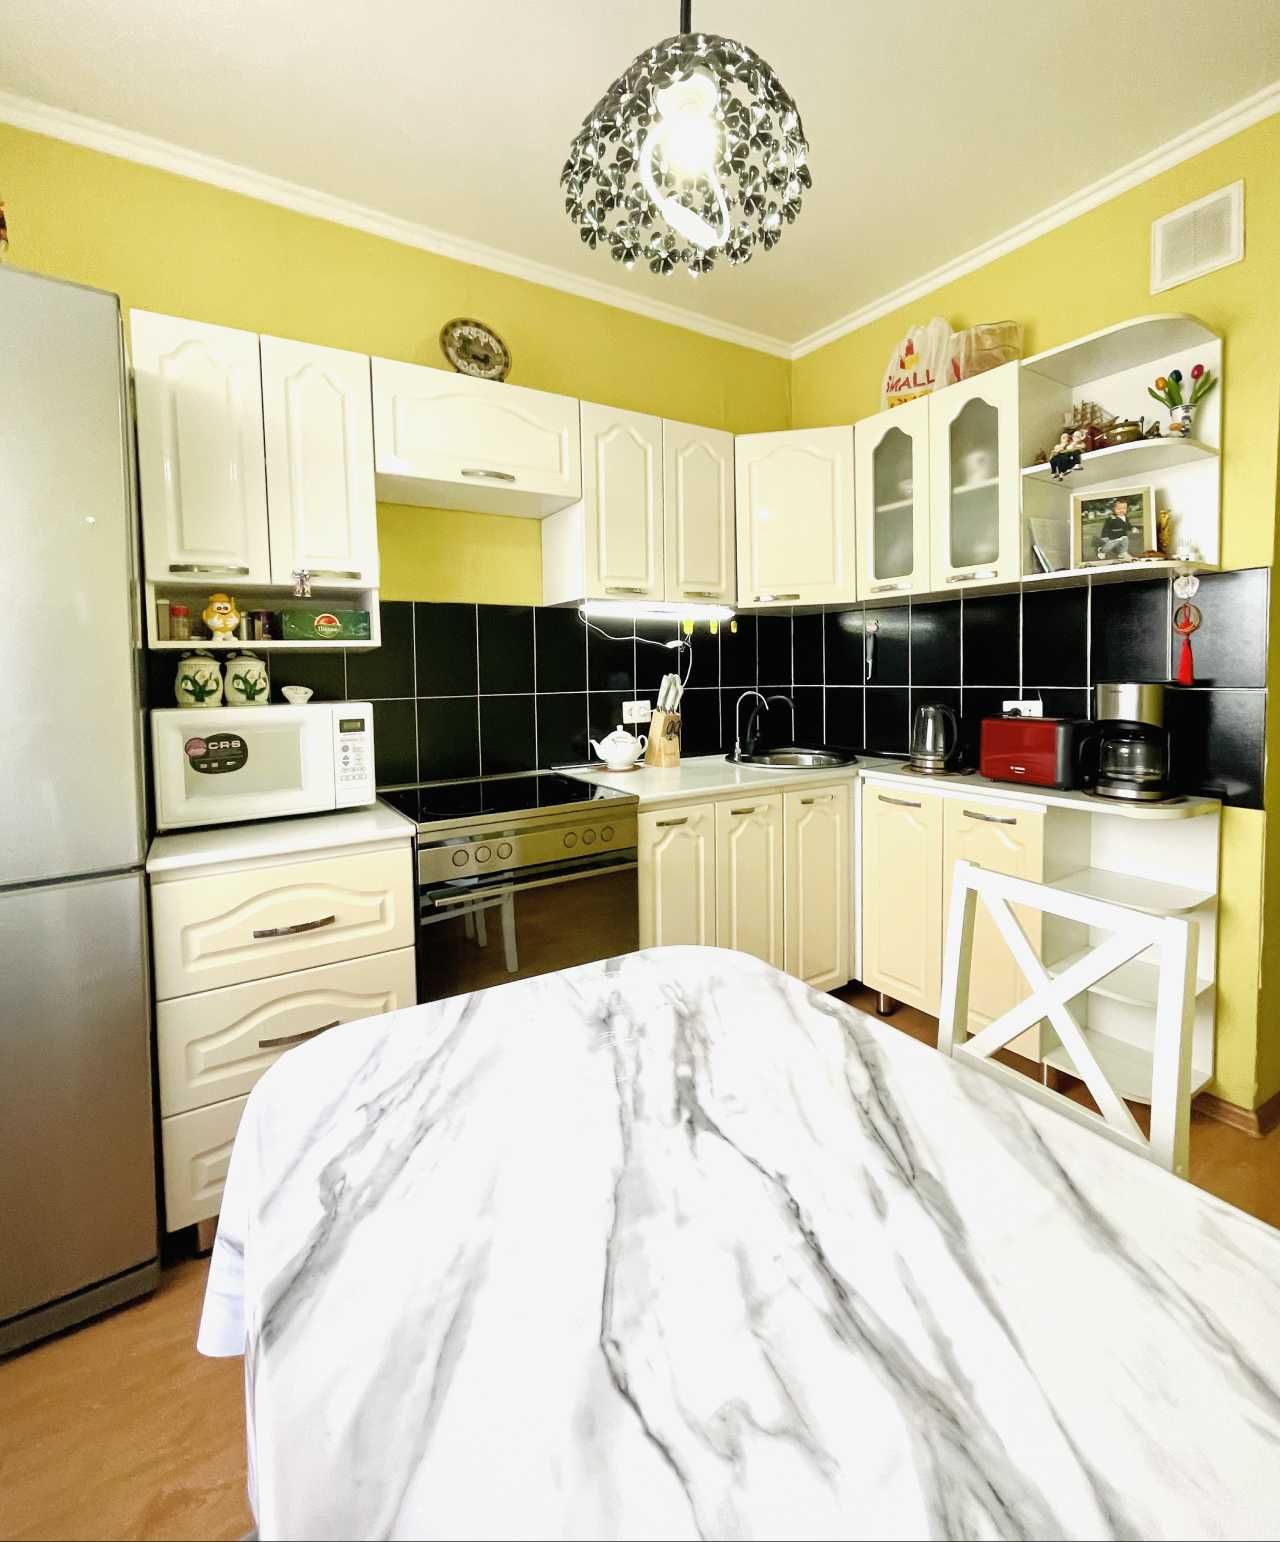 Продам уютную 3-х комнатную квартиру в Экибастуза (8 мкр)